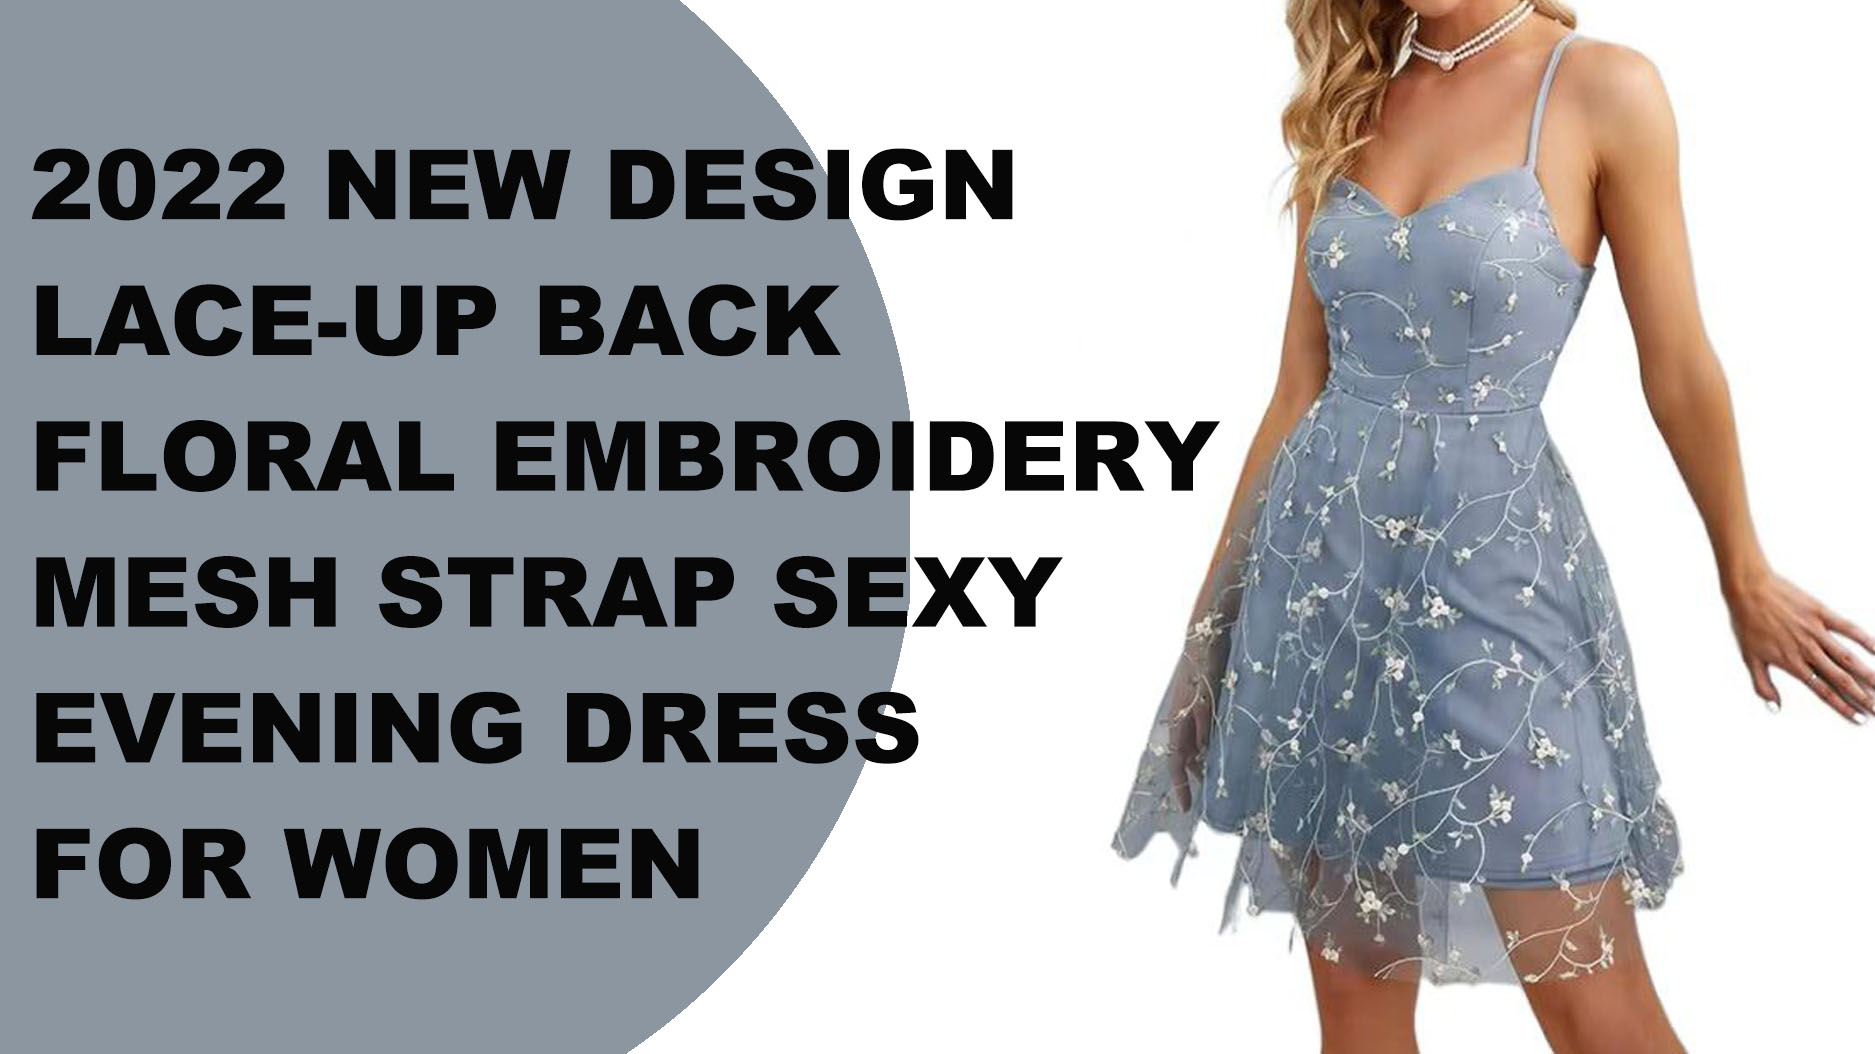 Robe de soirée sexy pour femmes, nouveau design, à lacets dans le dos, broderie florale, bretelles en maille, 2022